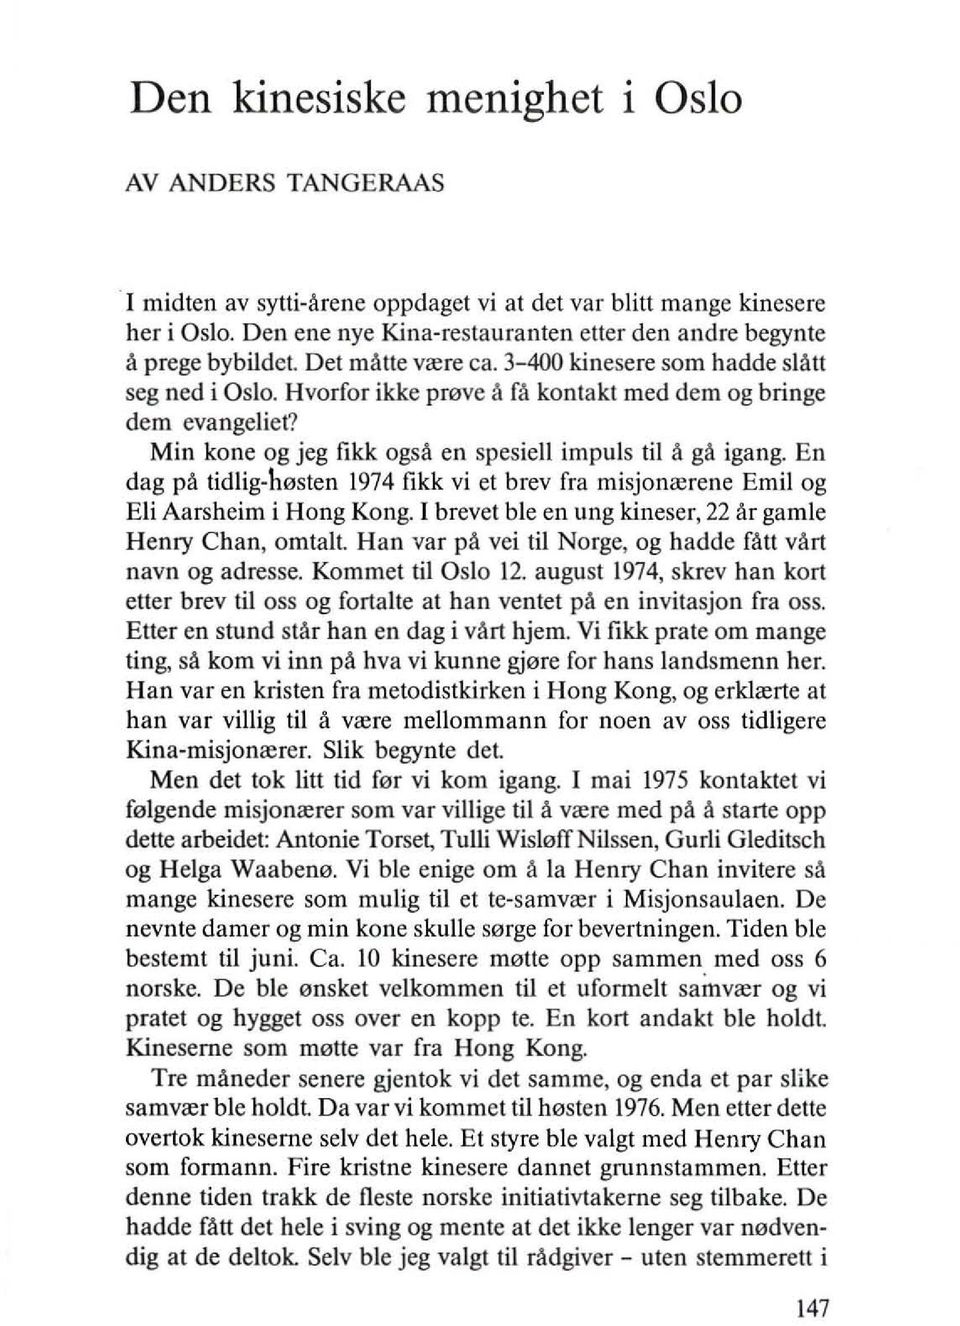 En dag pa tidlig-h0sten 1974 likk vi et brev fra misjonrerene Emil og Eli Aarsheim i Hong Kong. I brevet ble en ung kineser, 22 Ar gamle Henry Chan, omtalt.